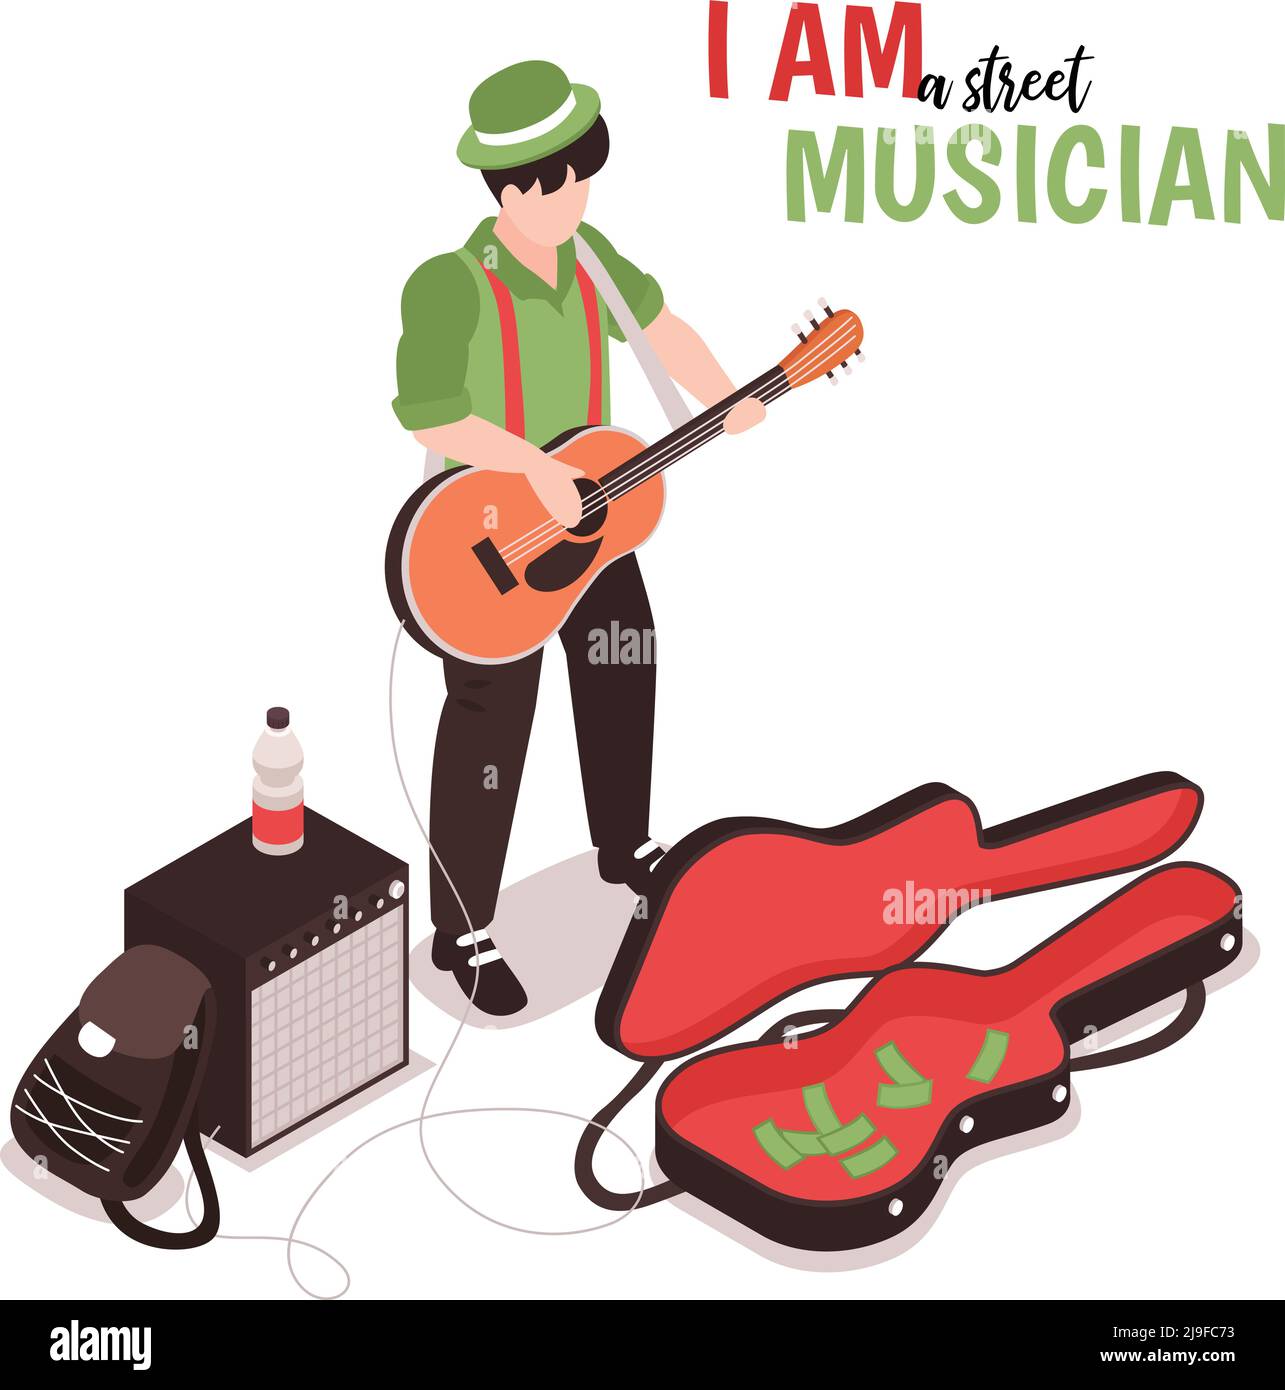 Isometrischer Straßenmusiker-Hintergrund mit Text und männlichem Doodle-Charakter Von Straßenkünstler mit akustischer Gitarre Vektor-Illustration Stock Vektor